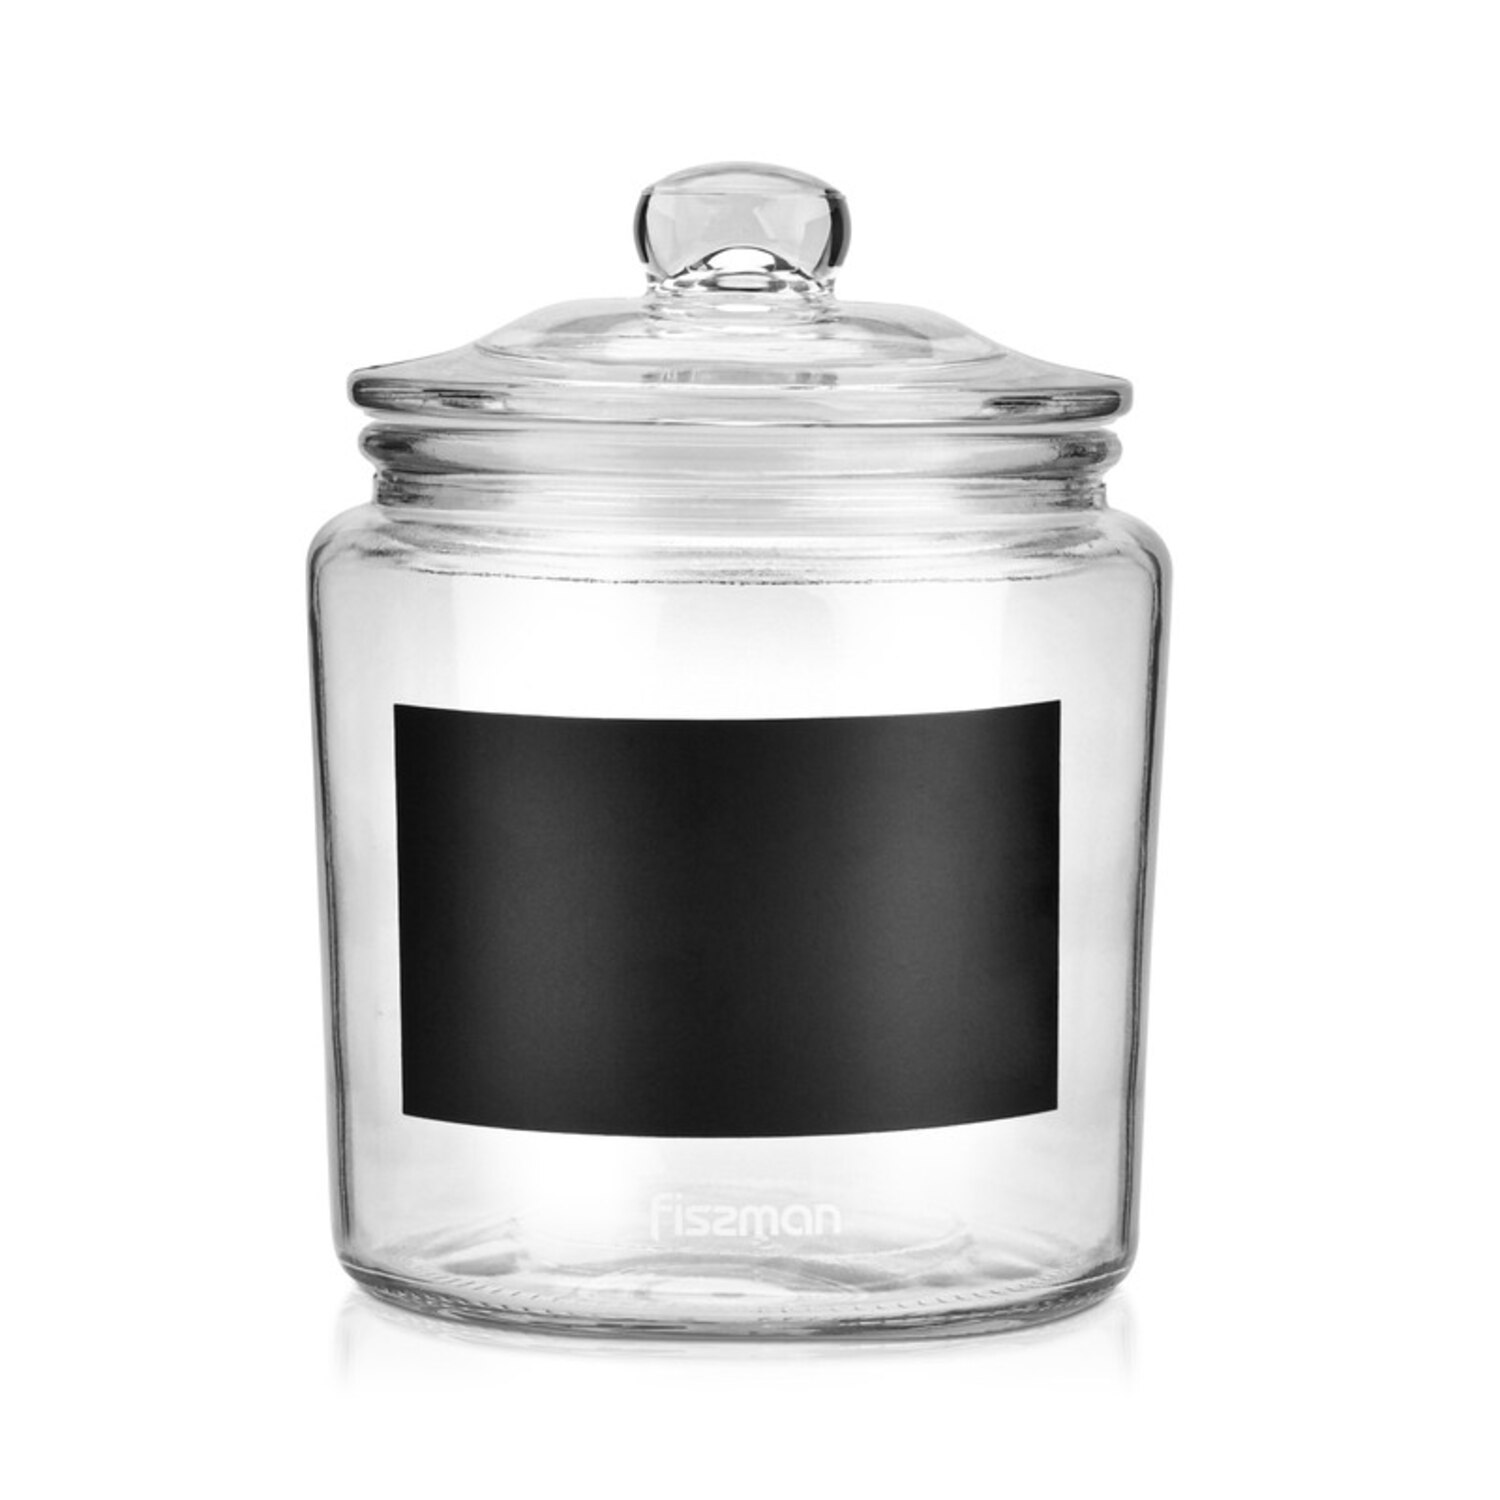 Fissman Glass Food Storage Jar Clear 11.5 X 16Cm